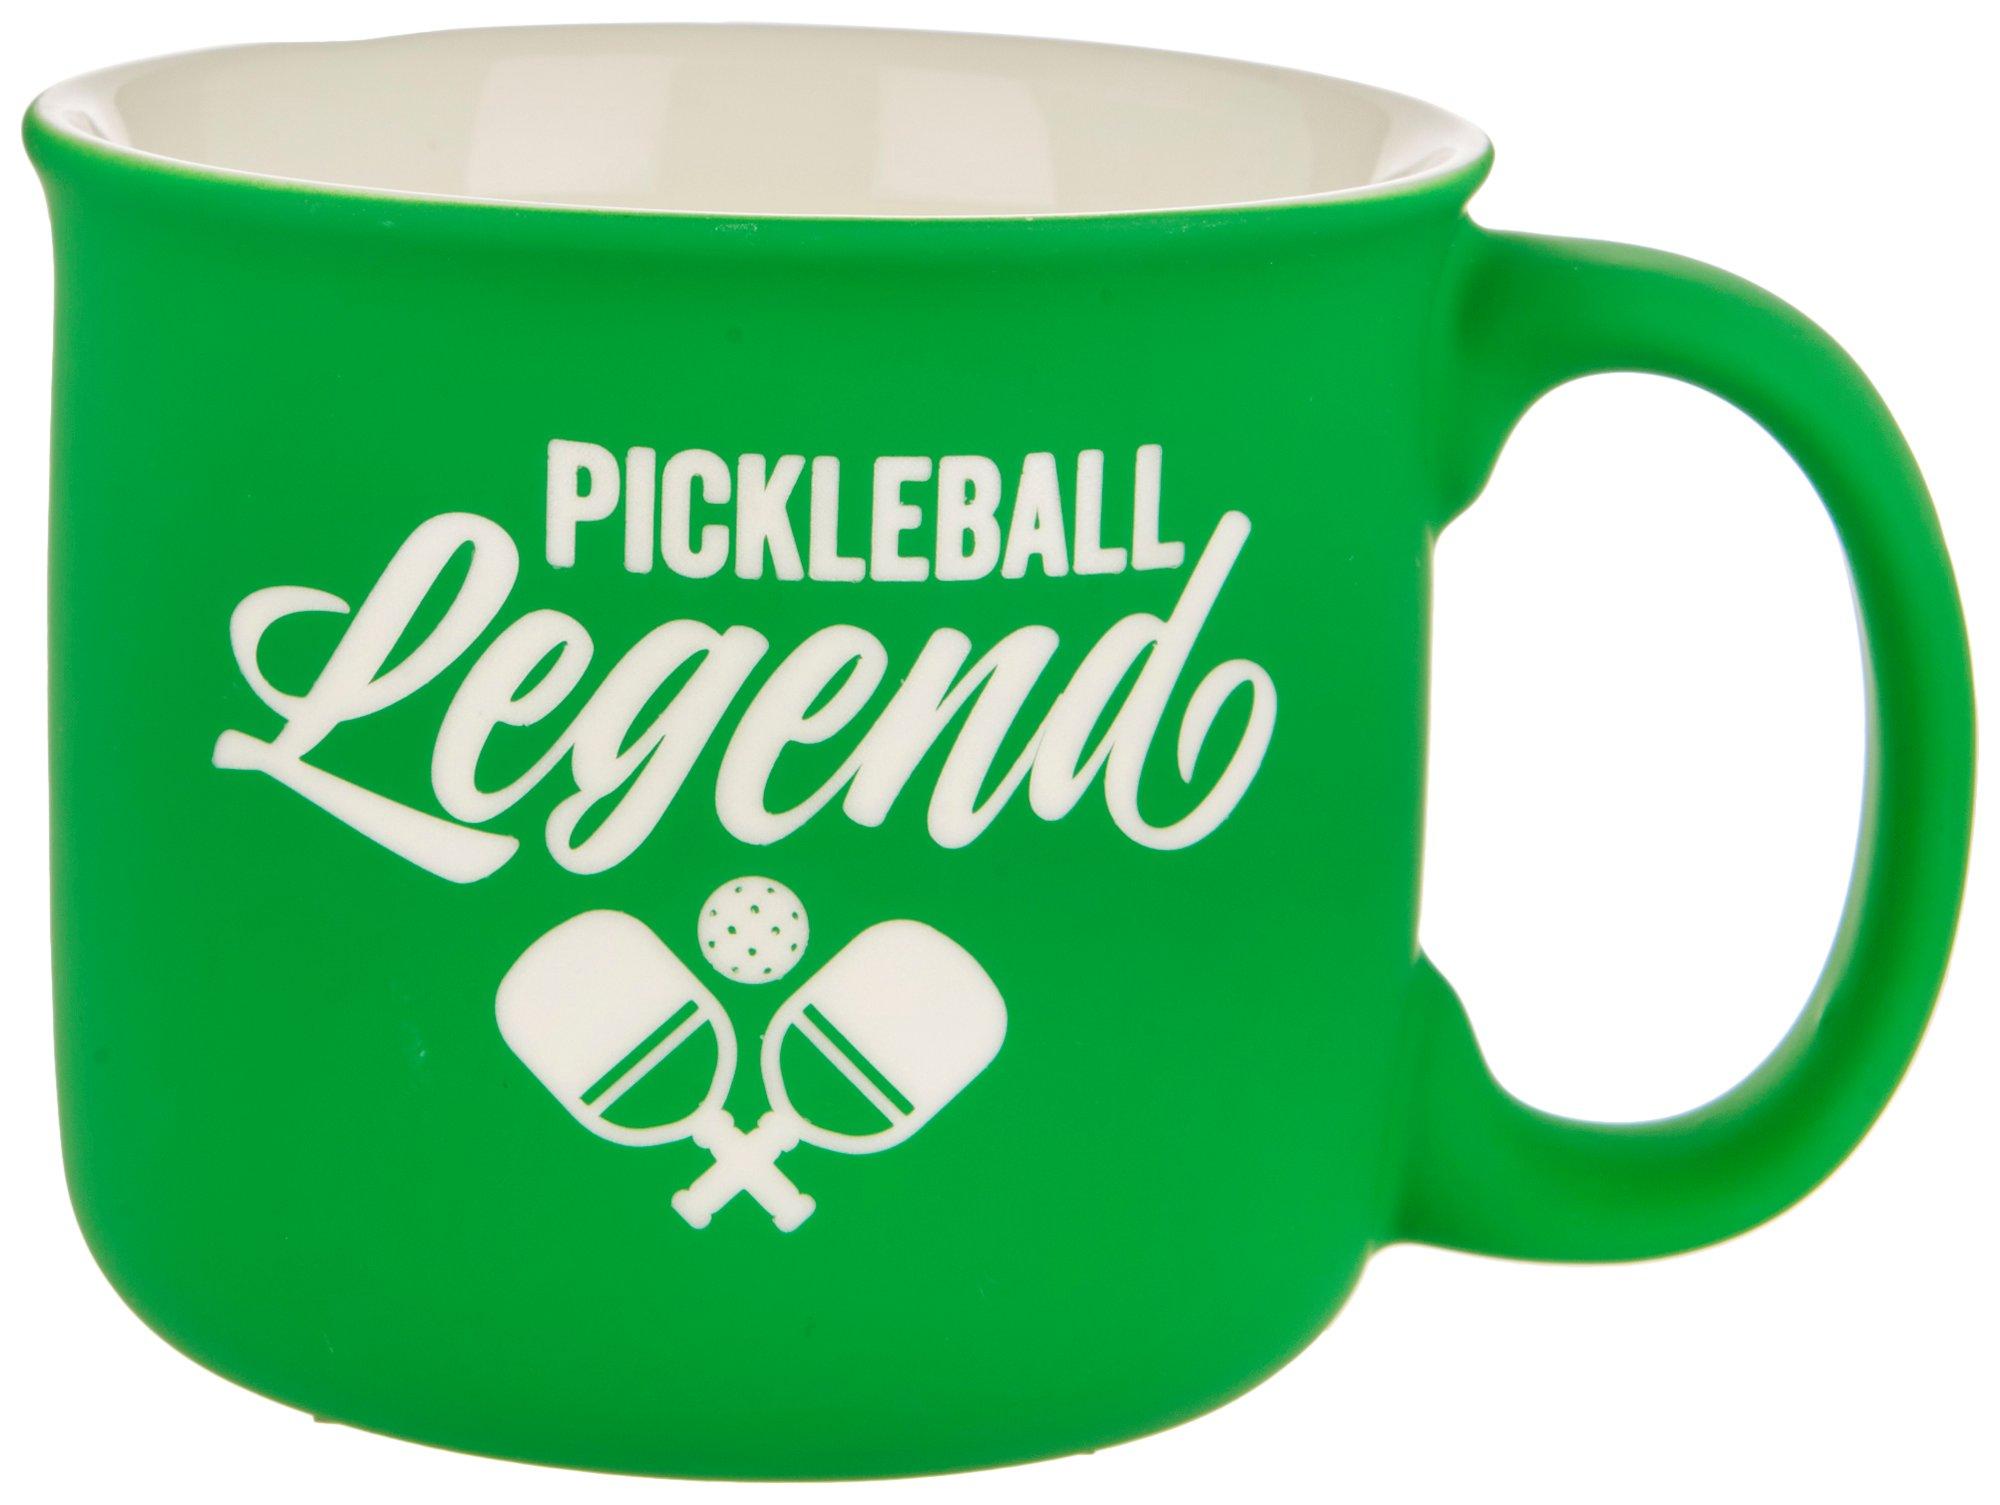 Eccolo Pickleball Legend Ceramic Mug